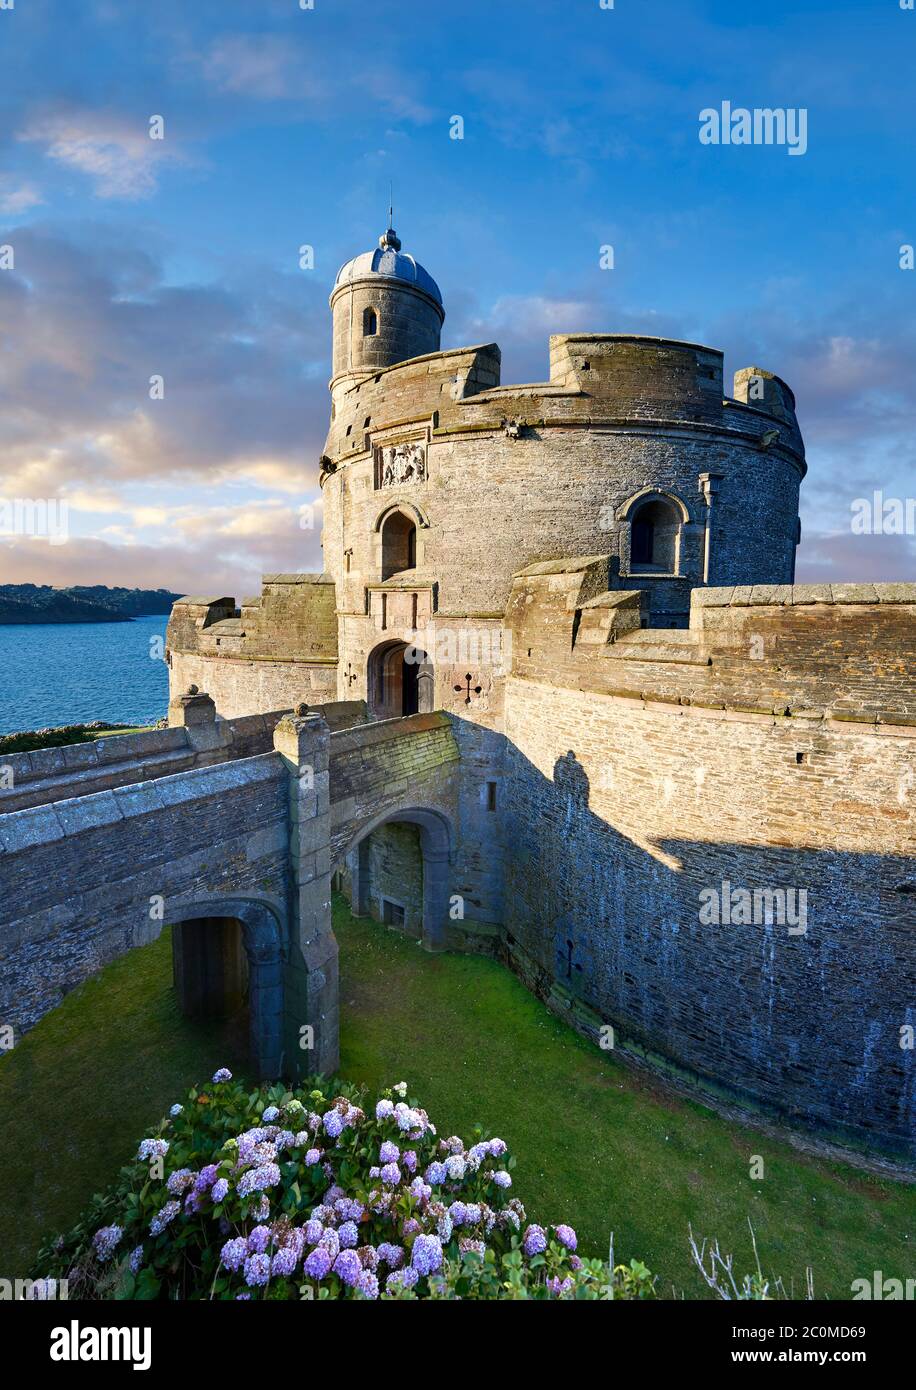 St Mawes Château Tudor défensive des forteresses côtières (1540) construit pour le Roi Henry VIII, Falmouth, Cornwall, Angleterre Banque D'Images